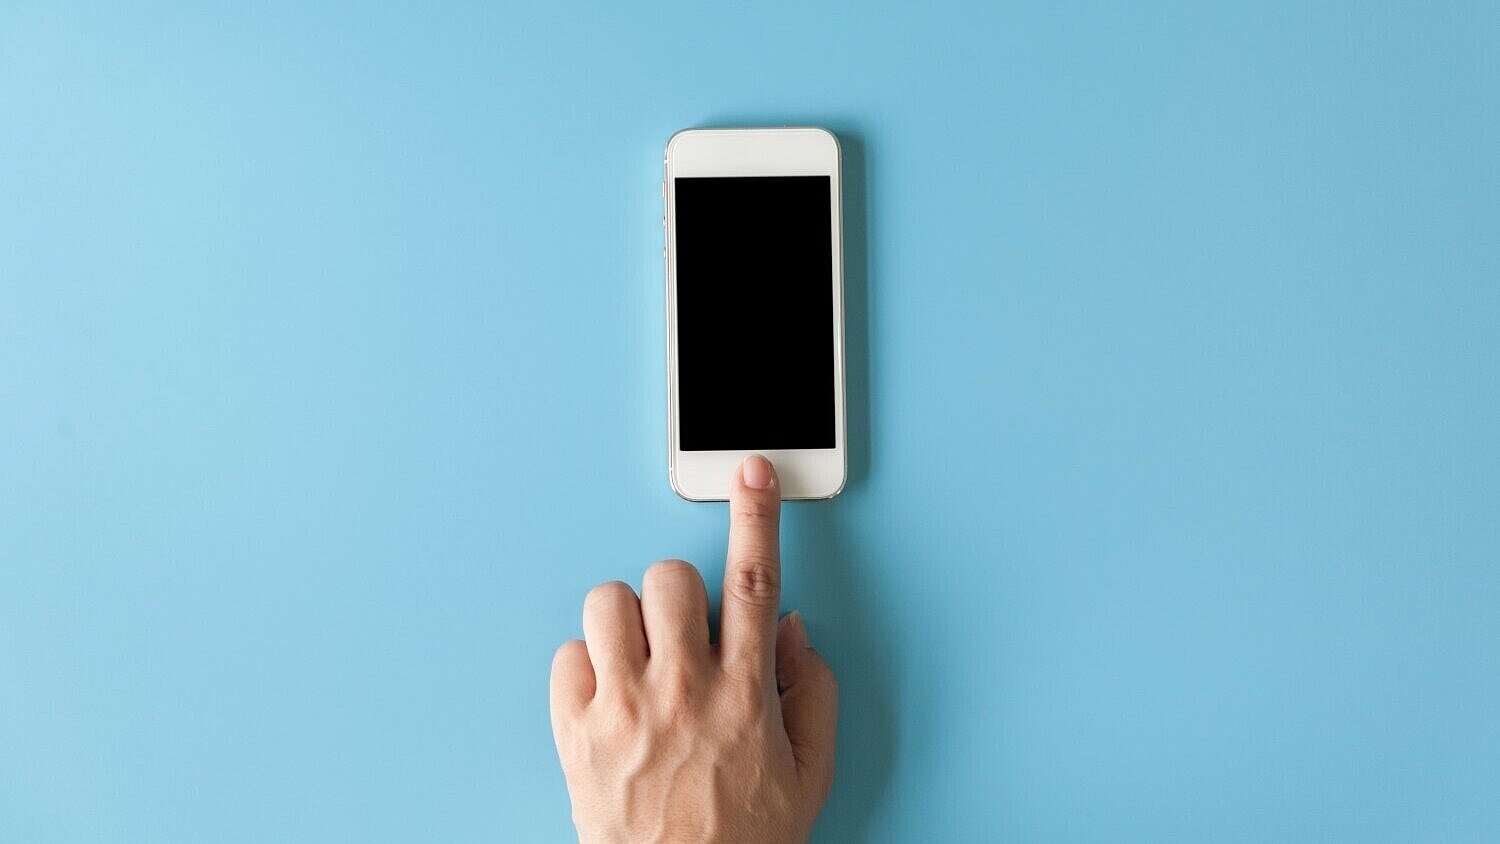 Linker Zeigefinger berührt Smartphone vor blauem Hintergrund